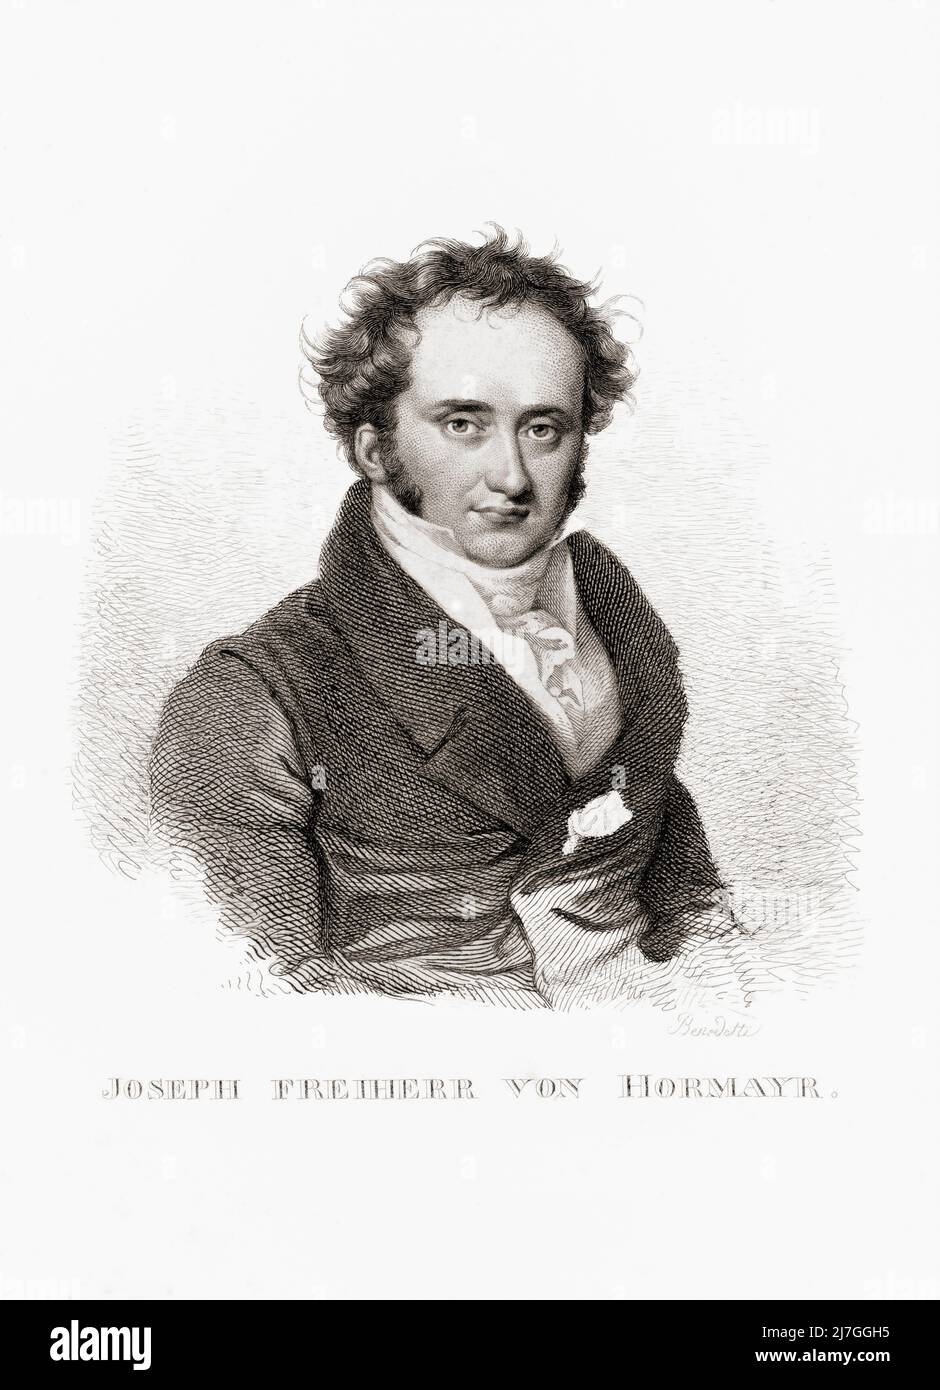 Joseph Hormayr, Baron zu Hortenburg, or Joseph Freiherr von Hormayr zu Hortenburg, 1781 - 1782.  Austrian and German historian and statesman. Stock Photo